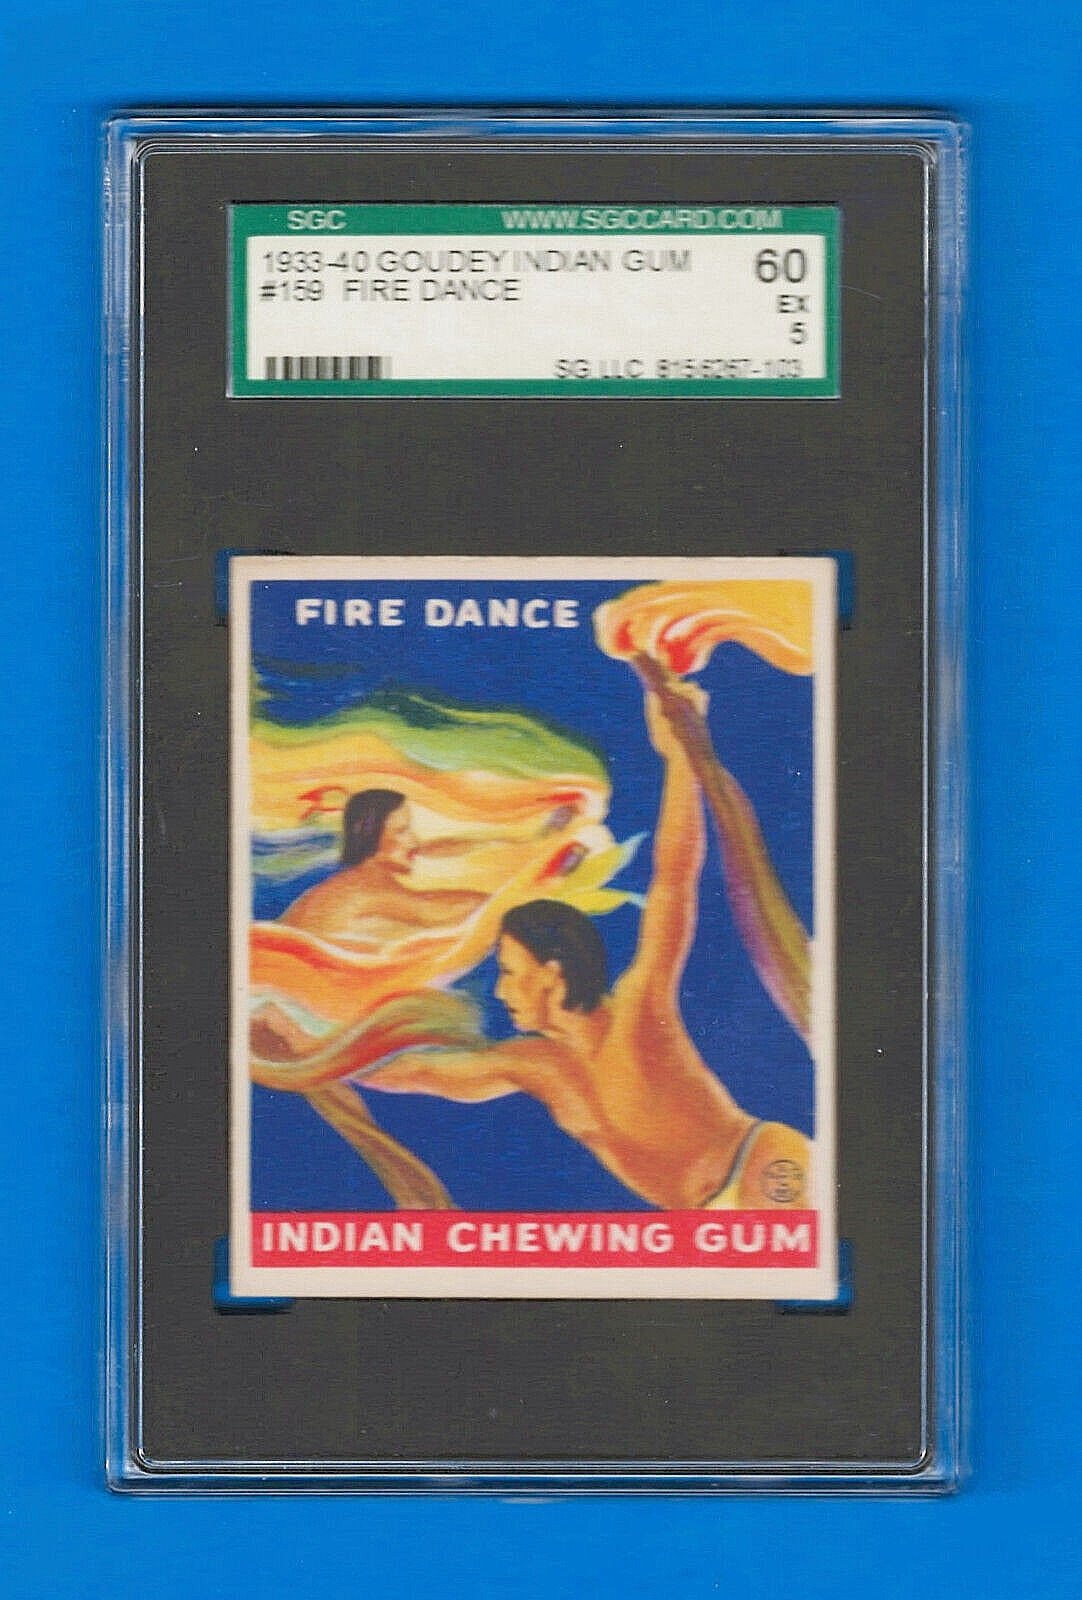 1933-40 R73 Goudey Indian Gum #159 - FIRE DANCE - Series 216 - SGC 60  EXCELLENT